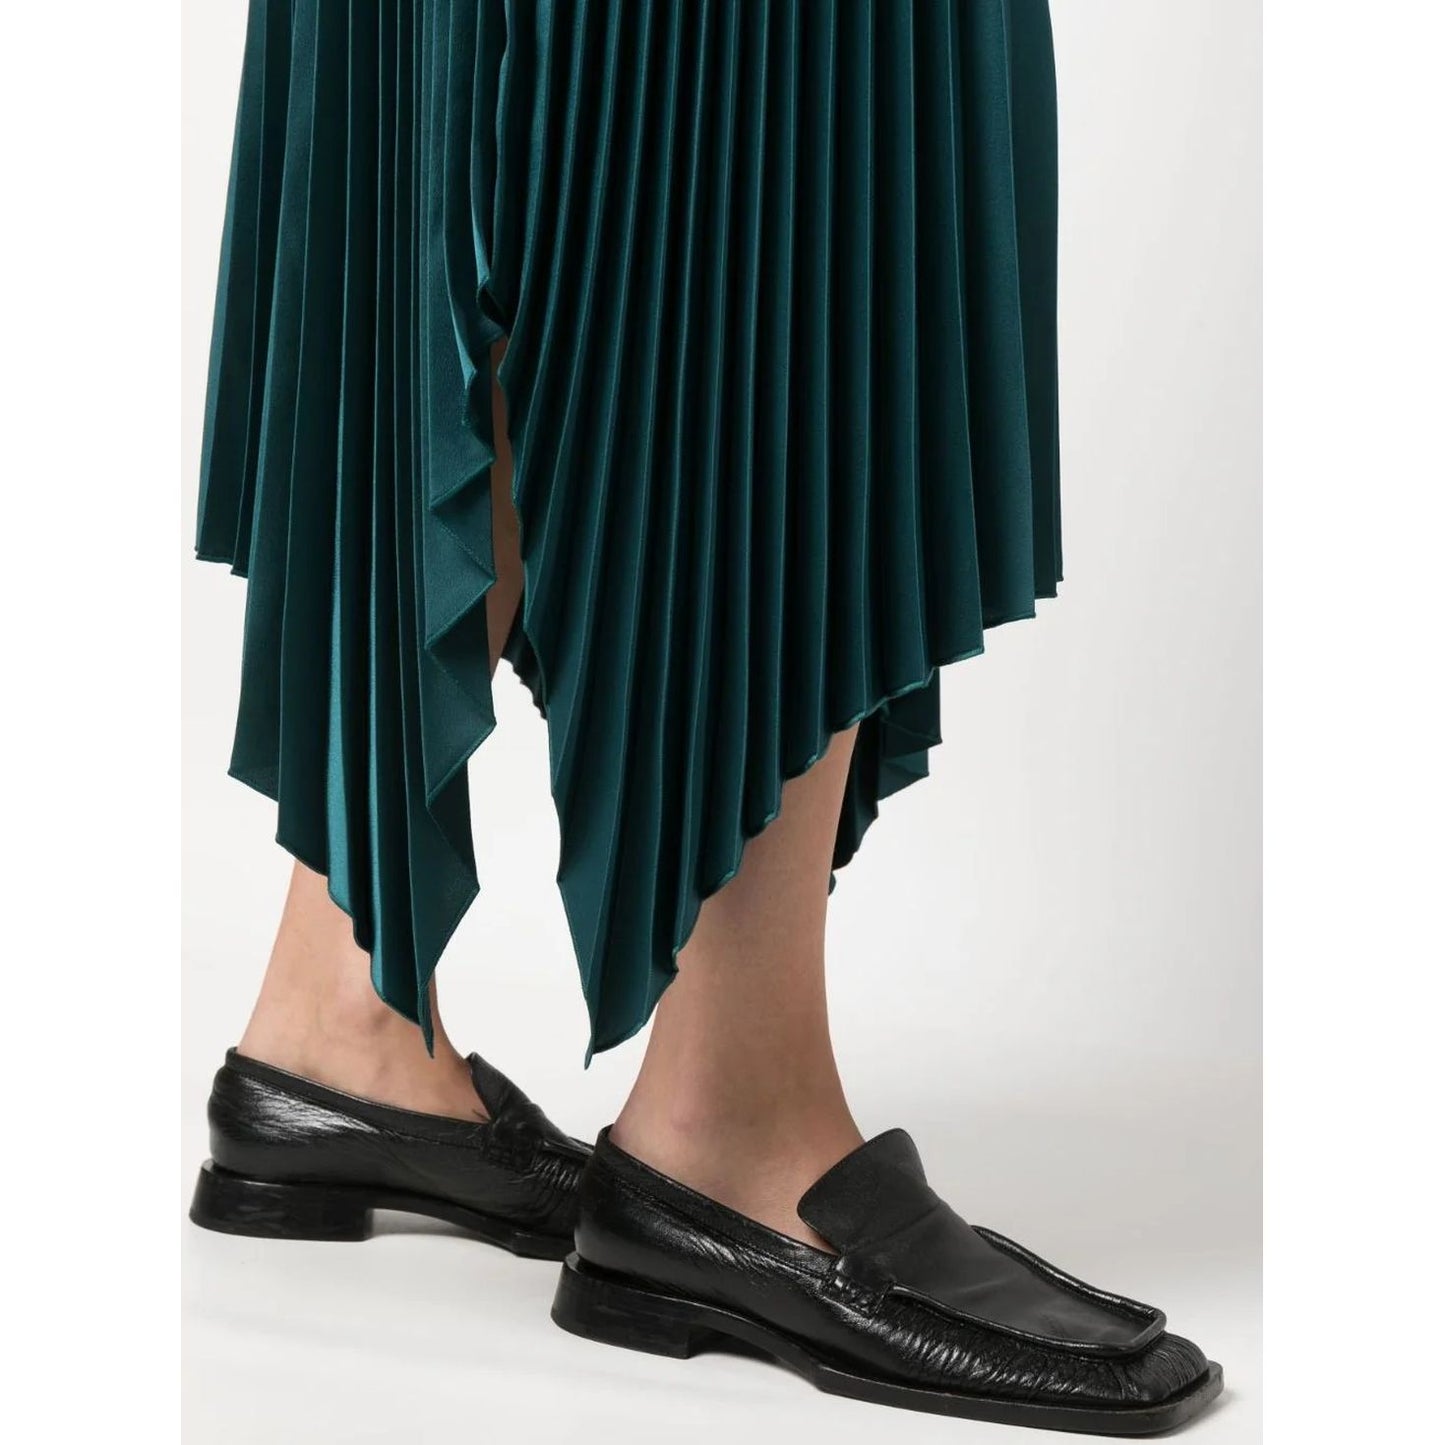 JOSEPH moteriškas žalias sijonas Ade knit weave plisse skirt